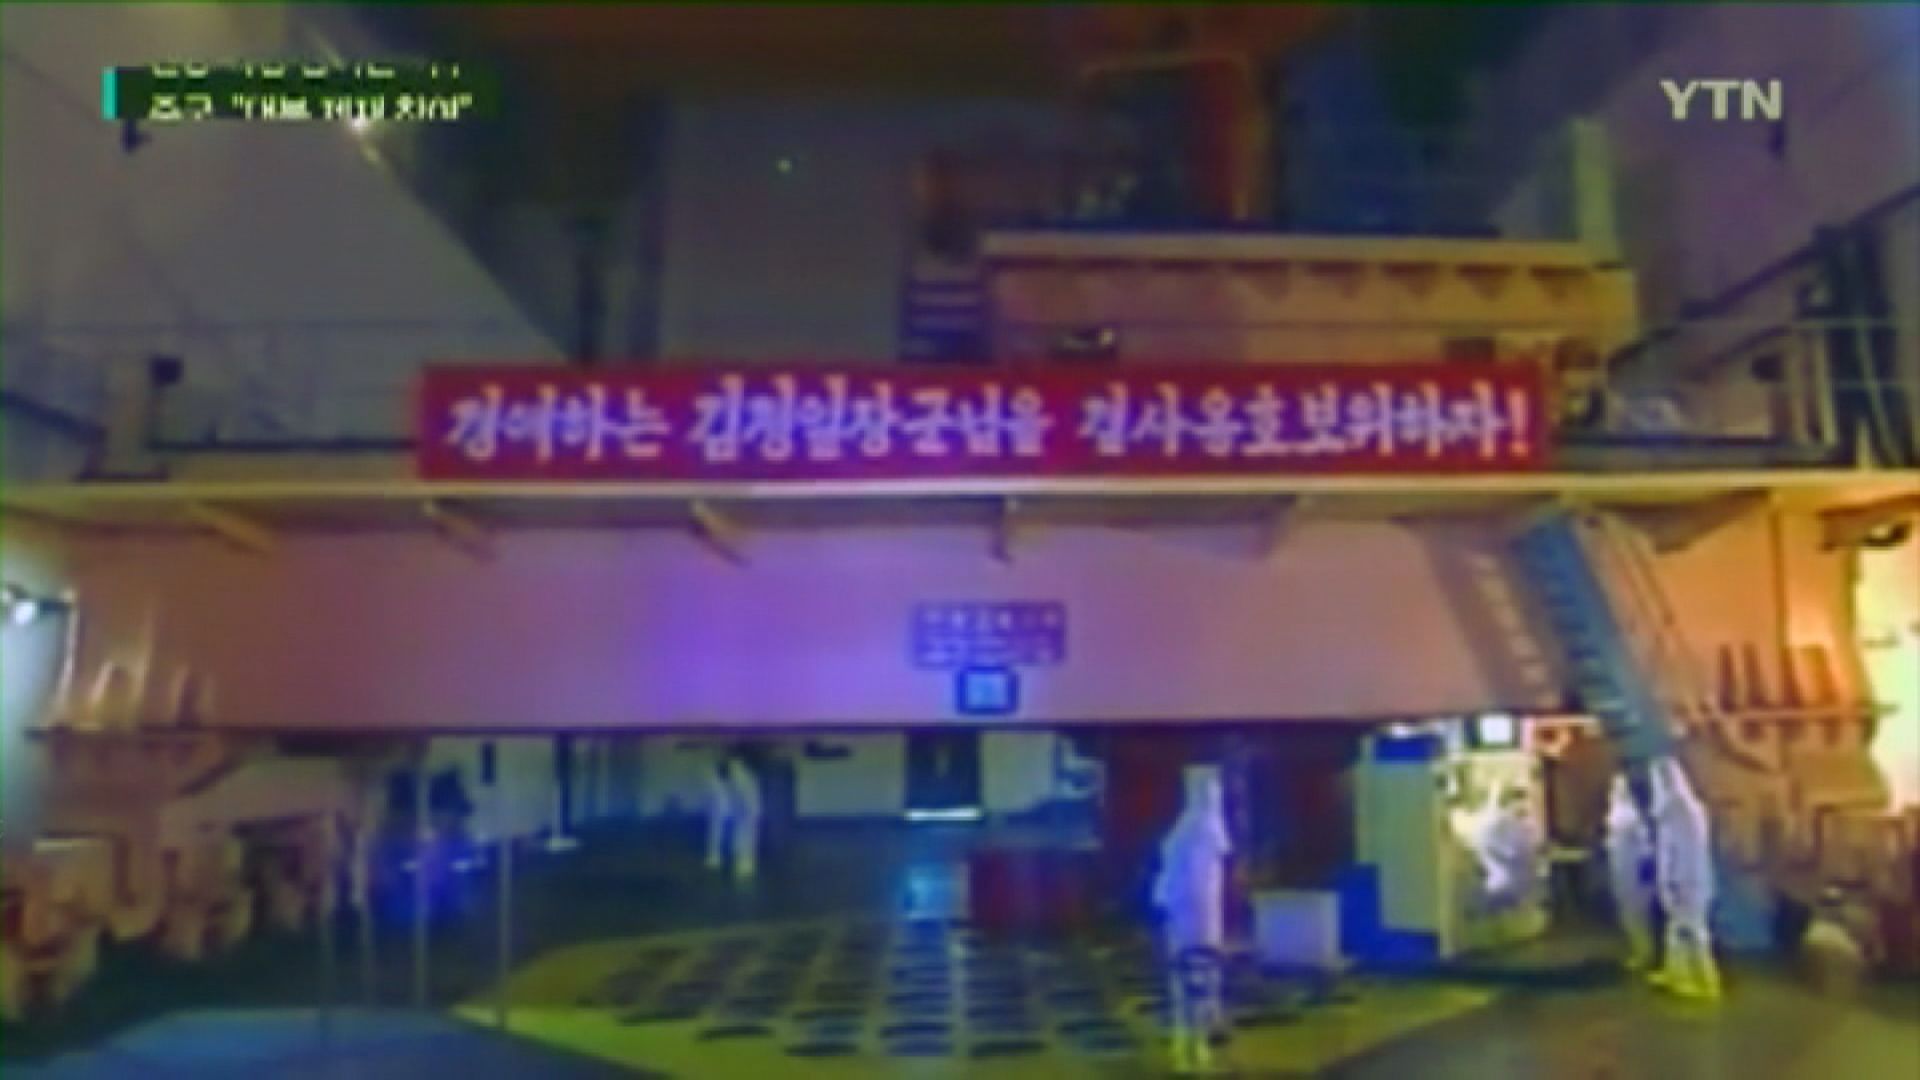 報告指跡象顯示北韓上月重啟核反應堆